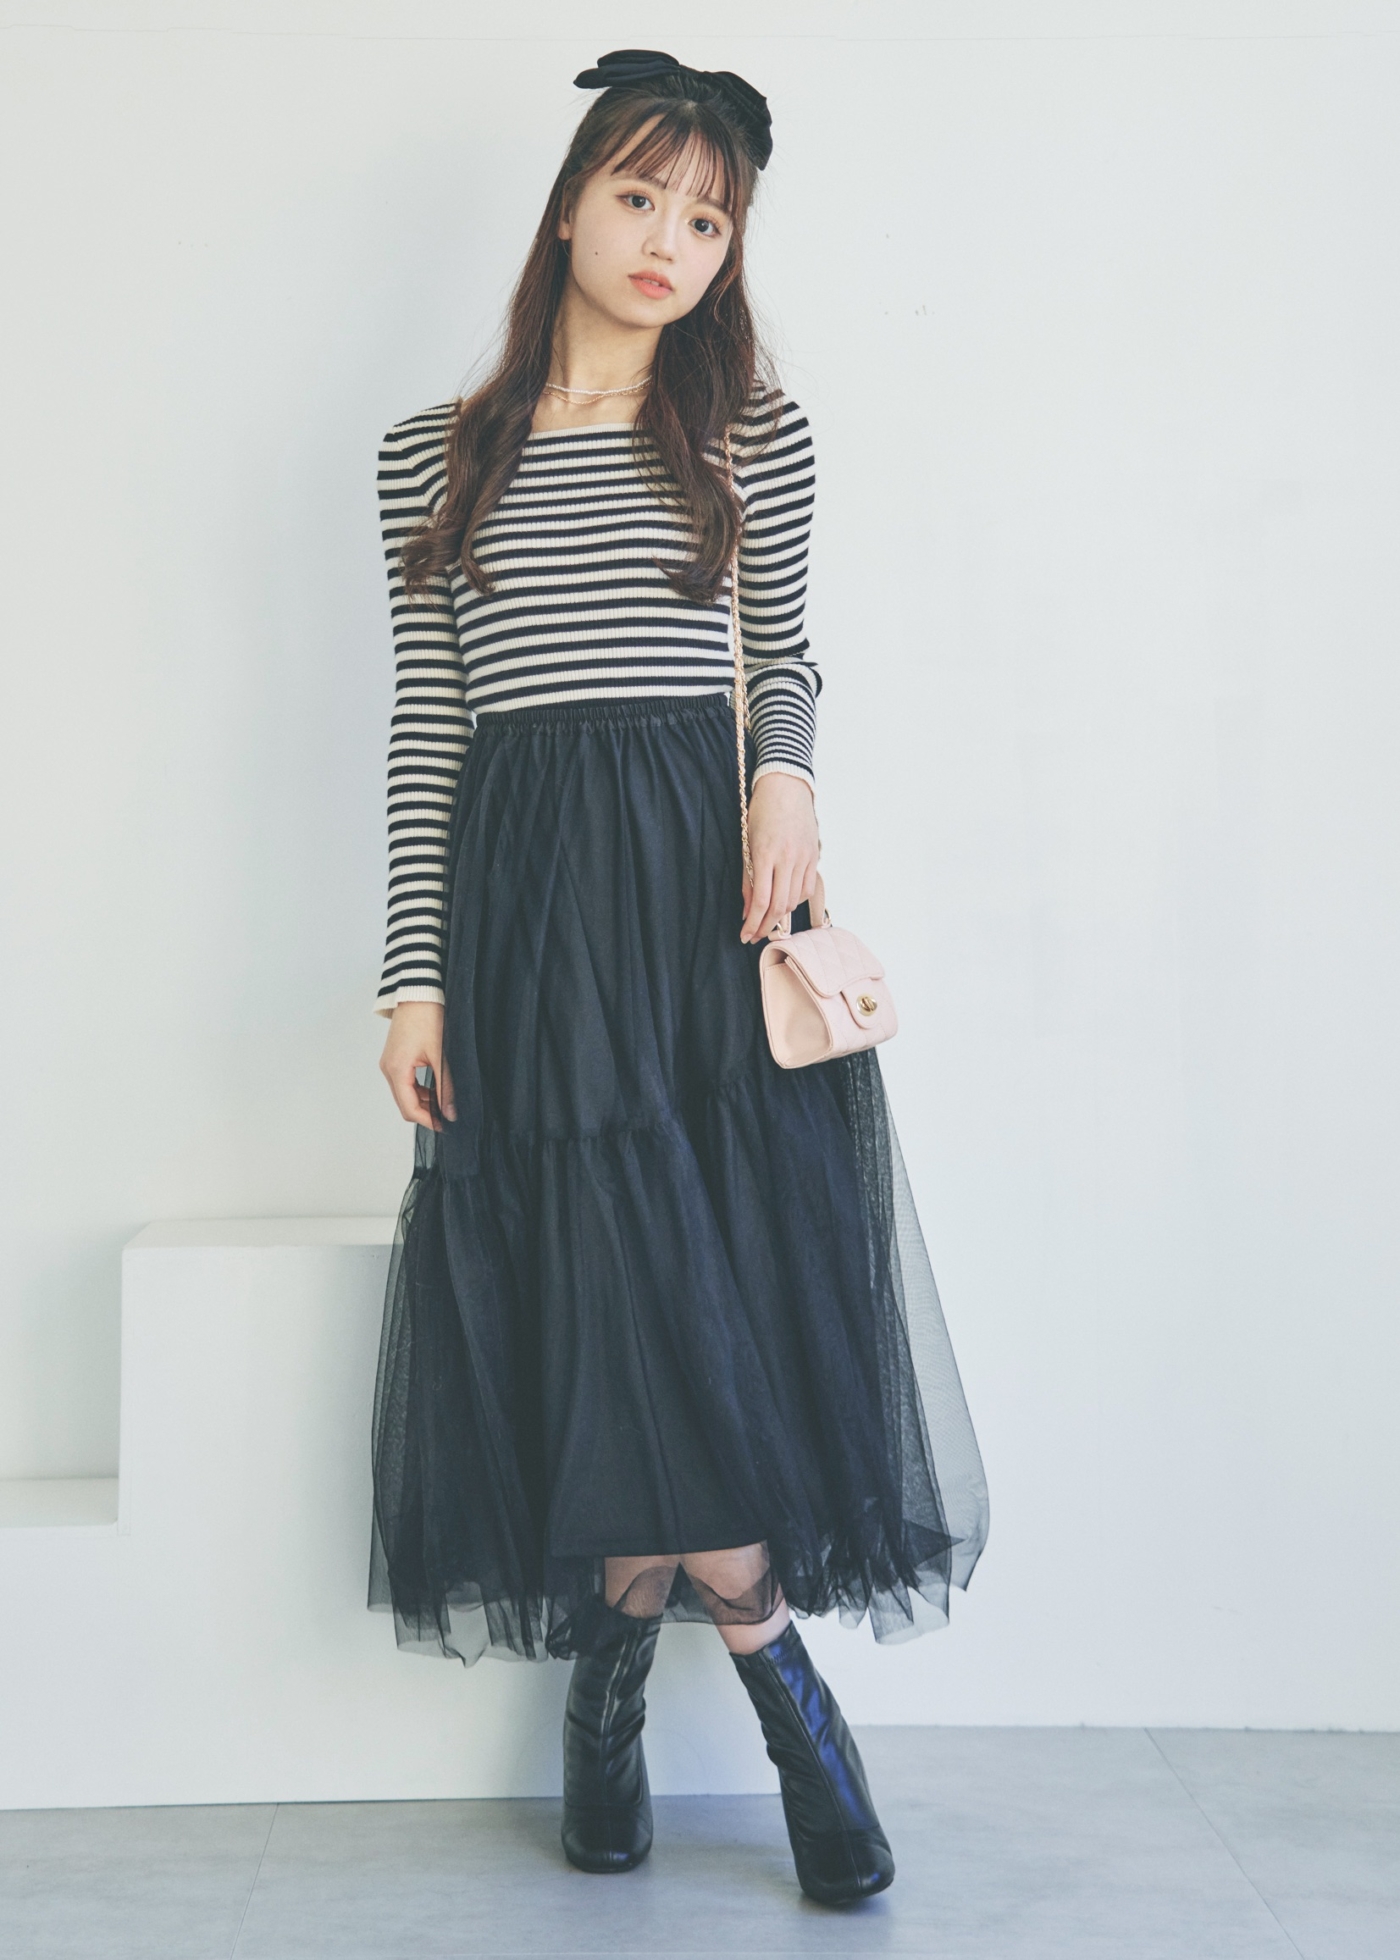 【春】高校生の可愛いデート服・レース・チュール素材のスカート